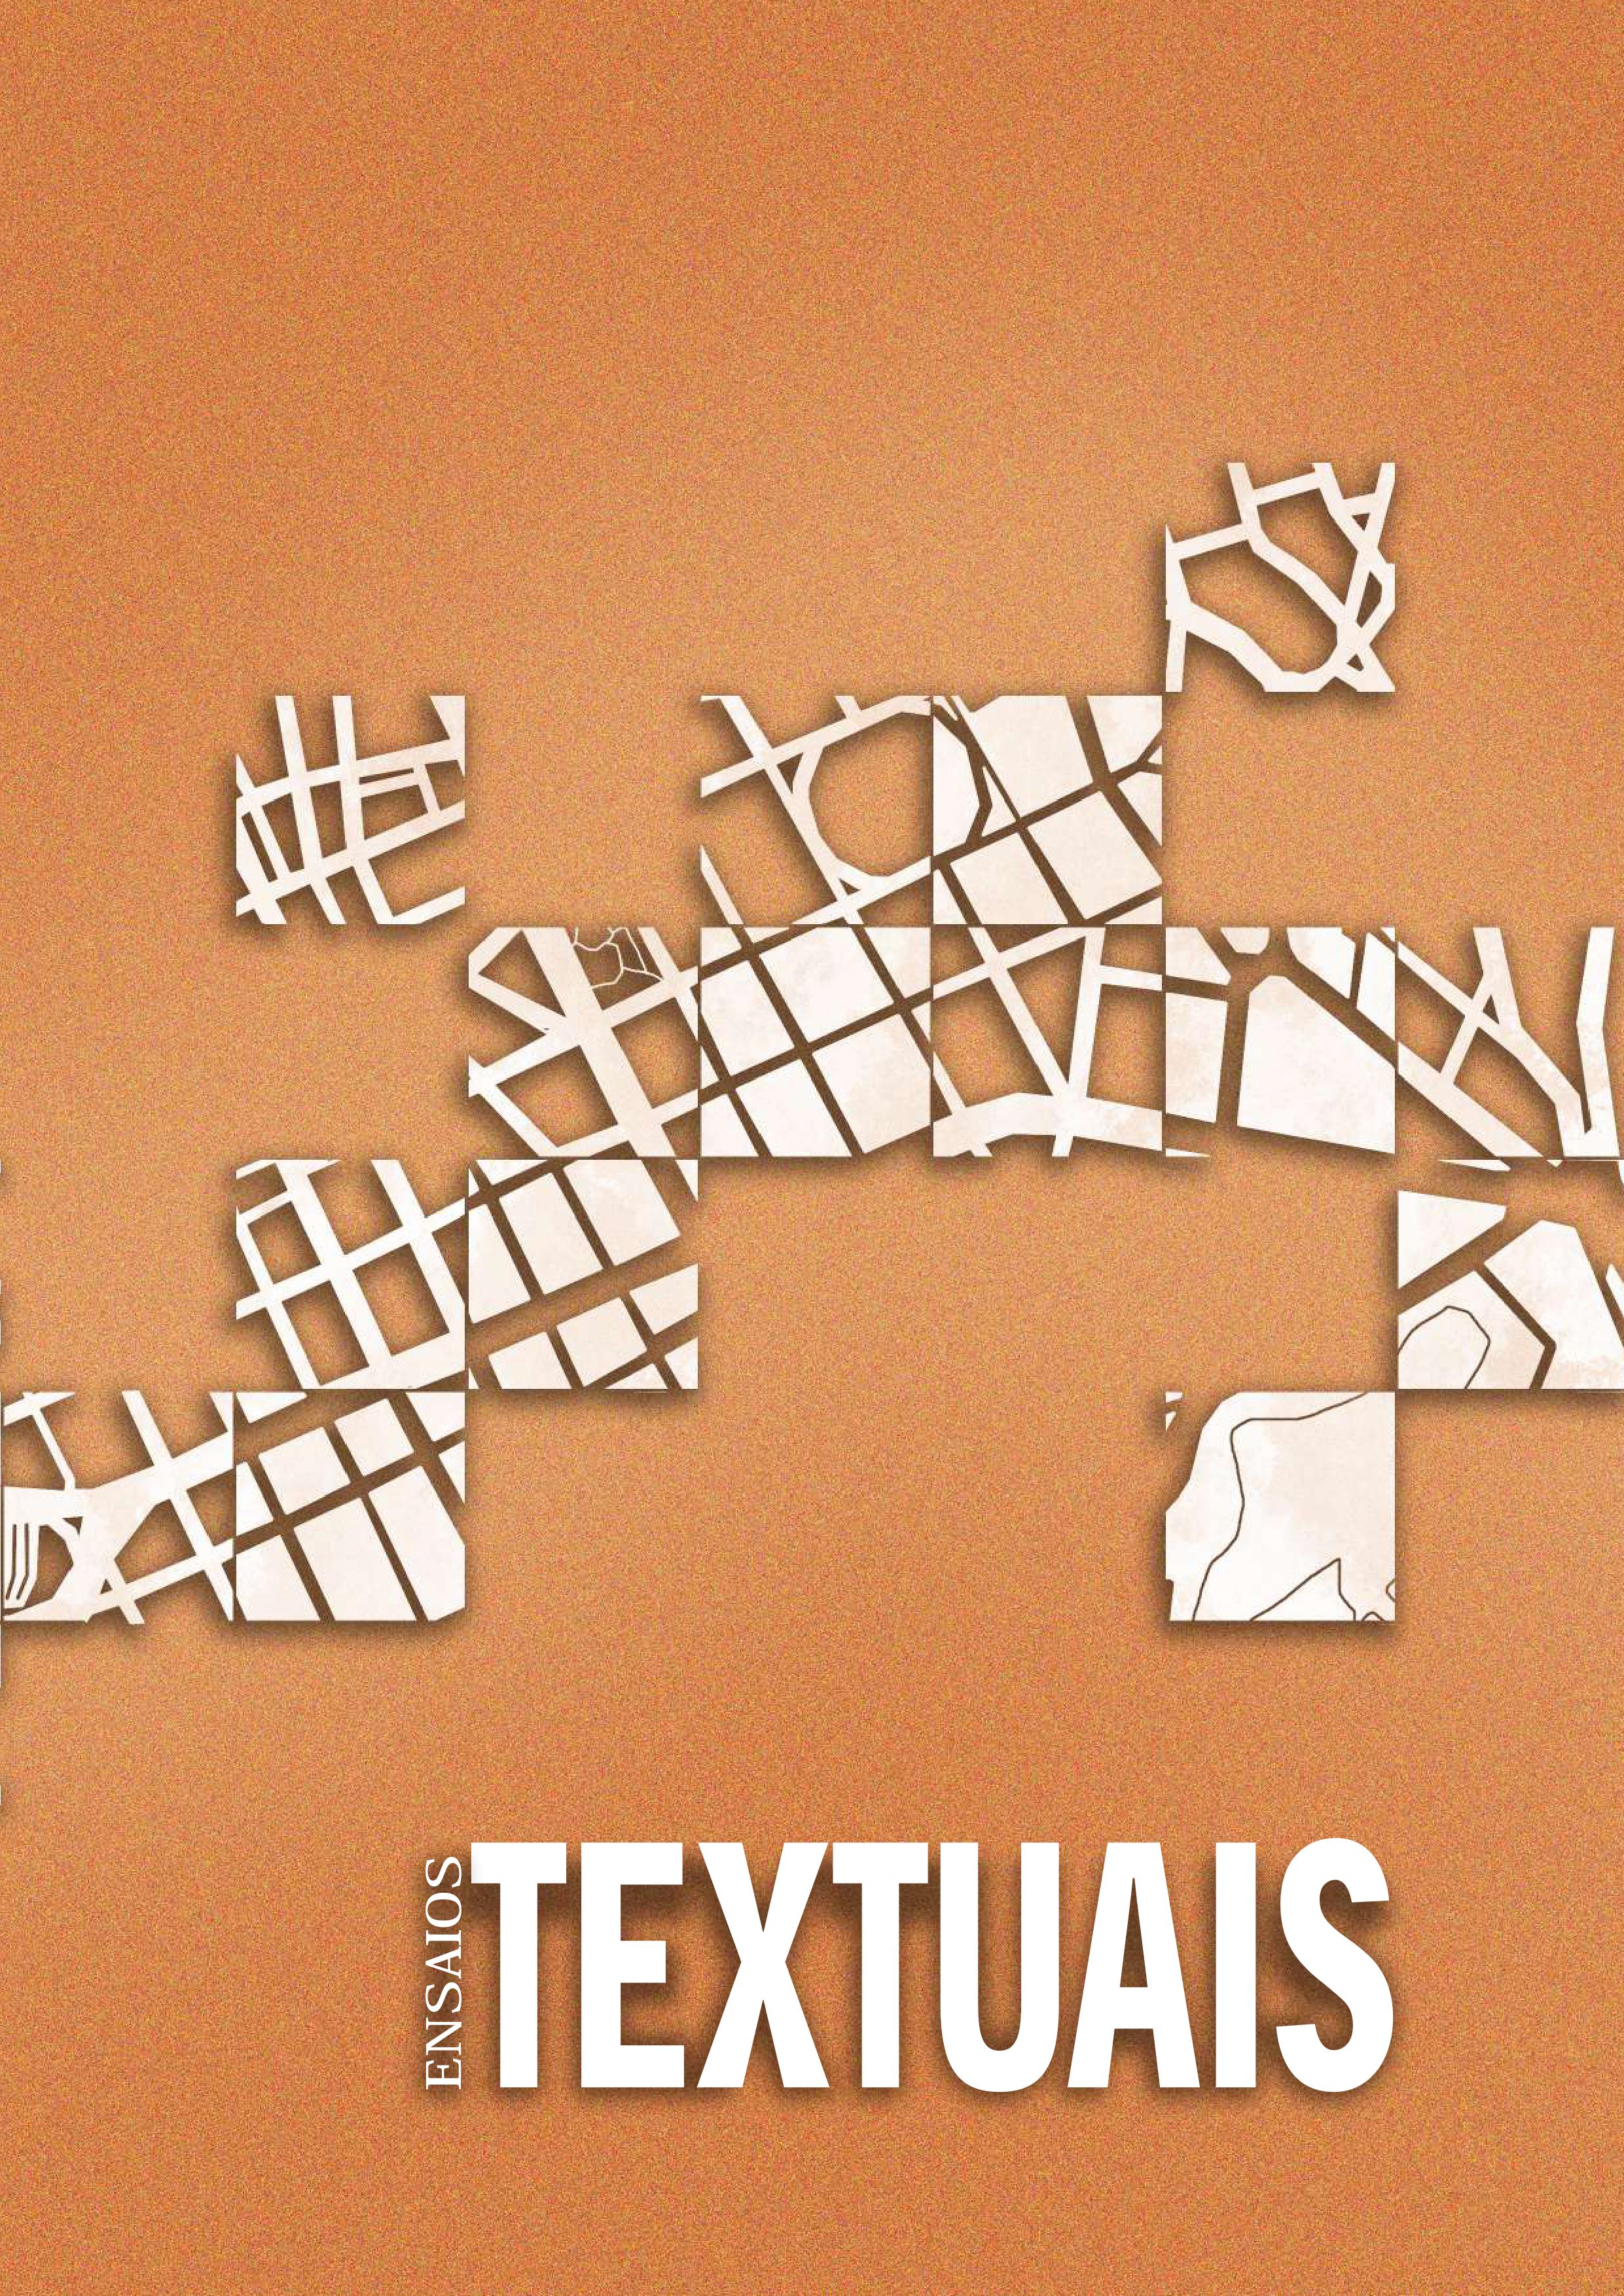 capa dos ensaios textuais da revista tulha nº 09, fundo laranja e ilustrações em branco produzidas por Ana Cecília Mota, com os dizeres Ensaios Textuais